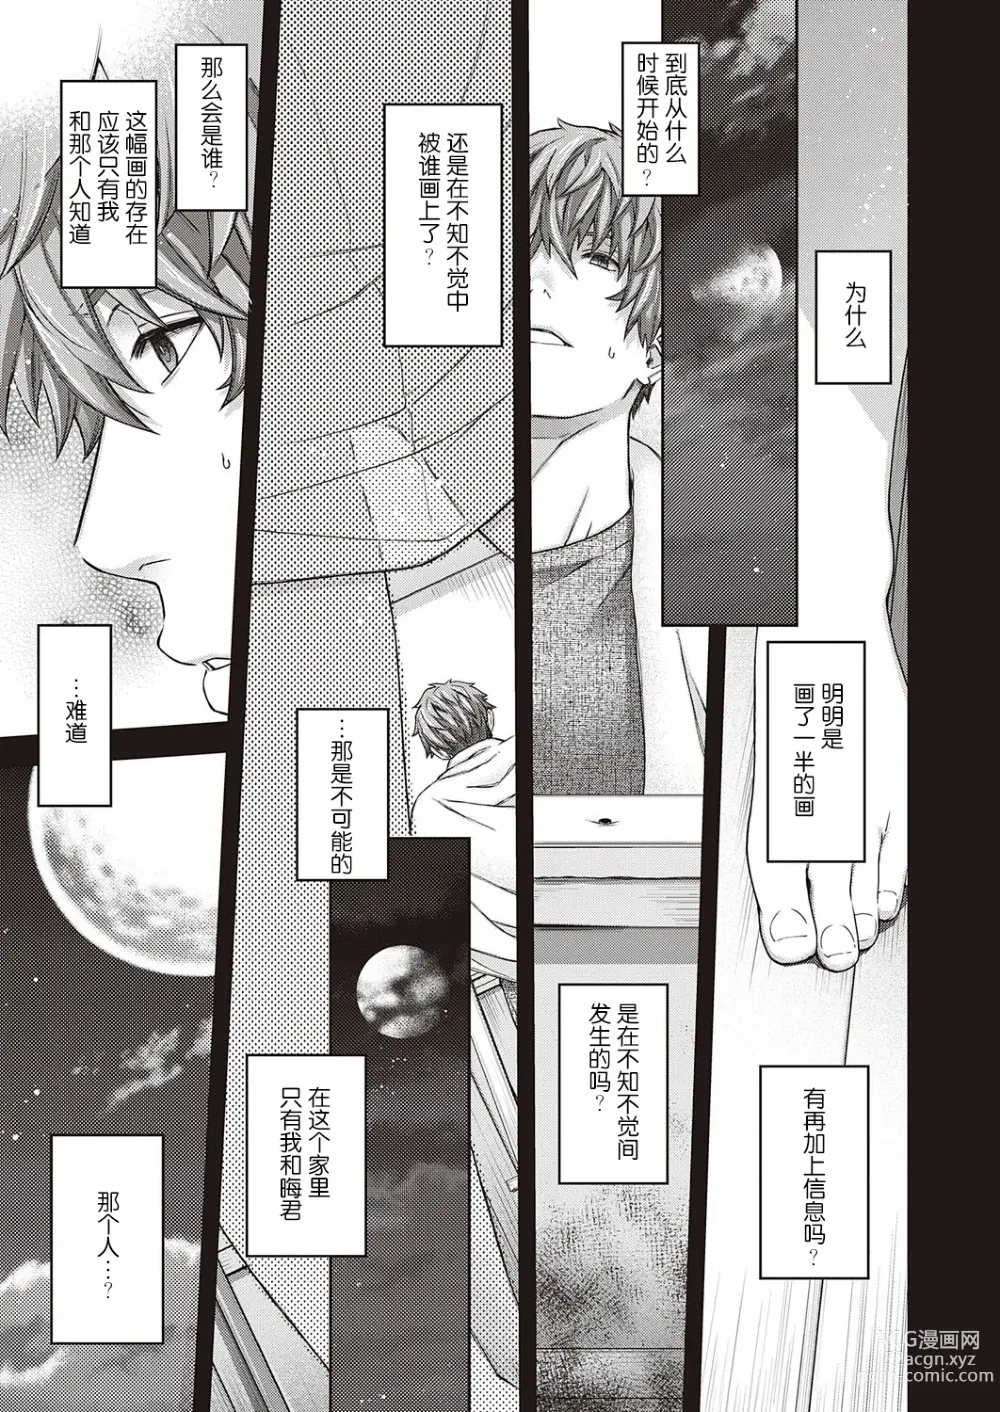 Page 9 of manga Eigetsu no Kemono